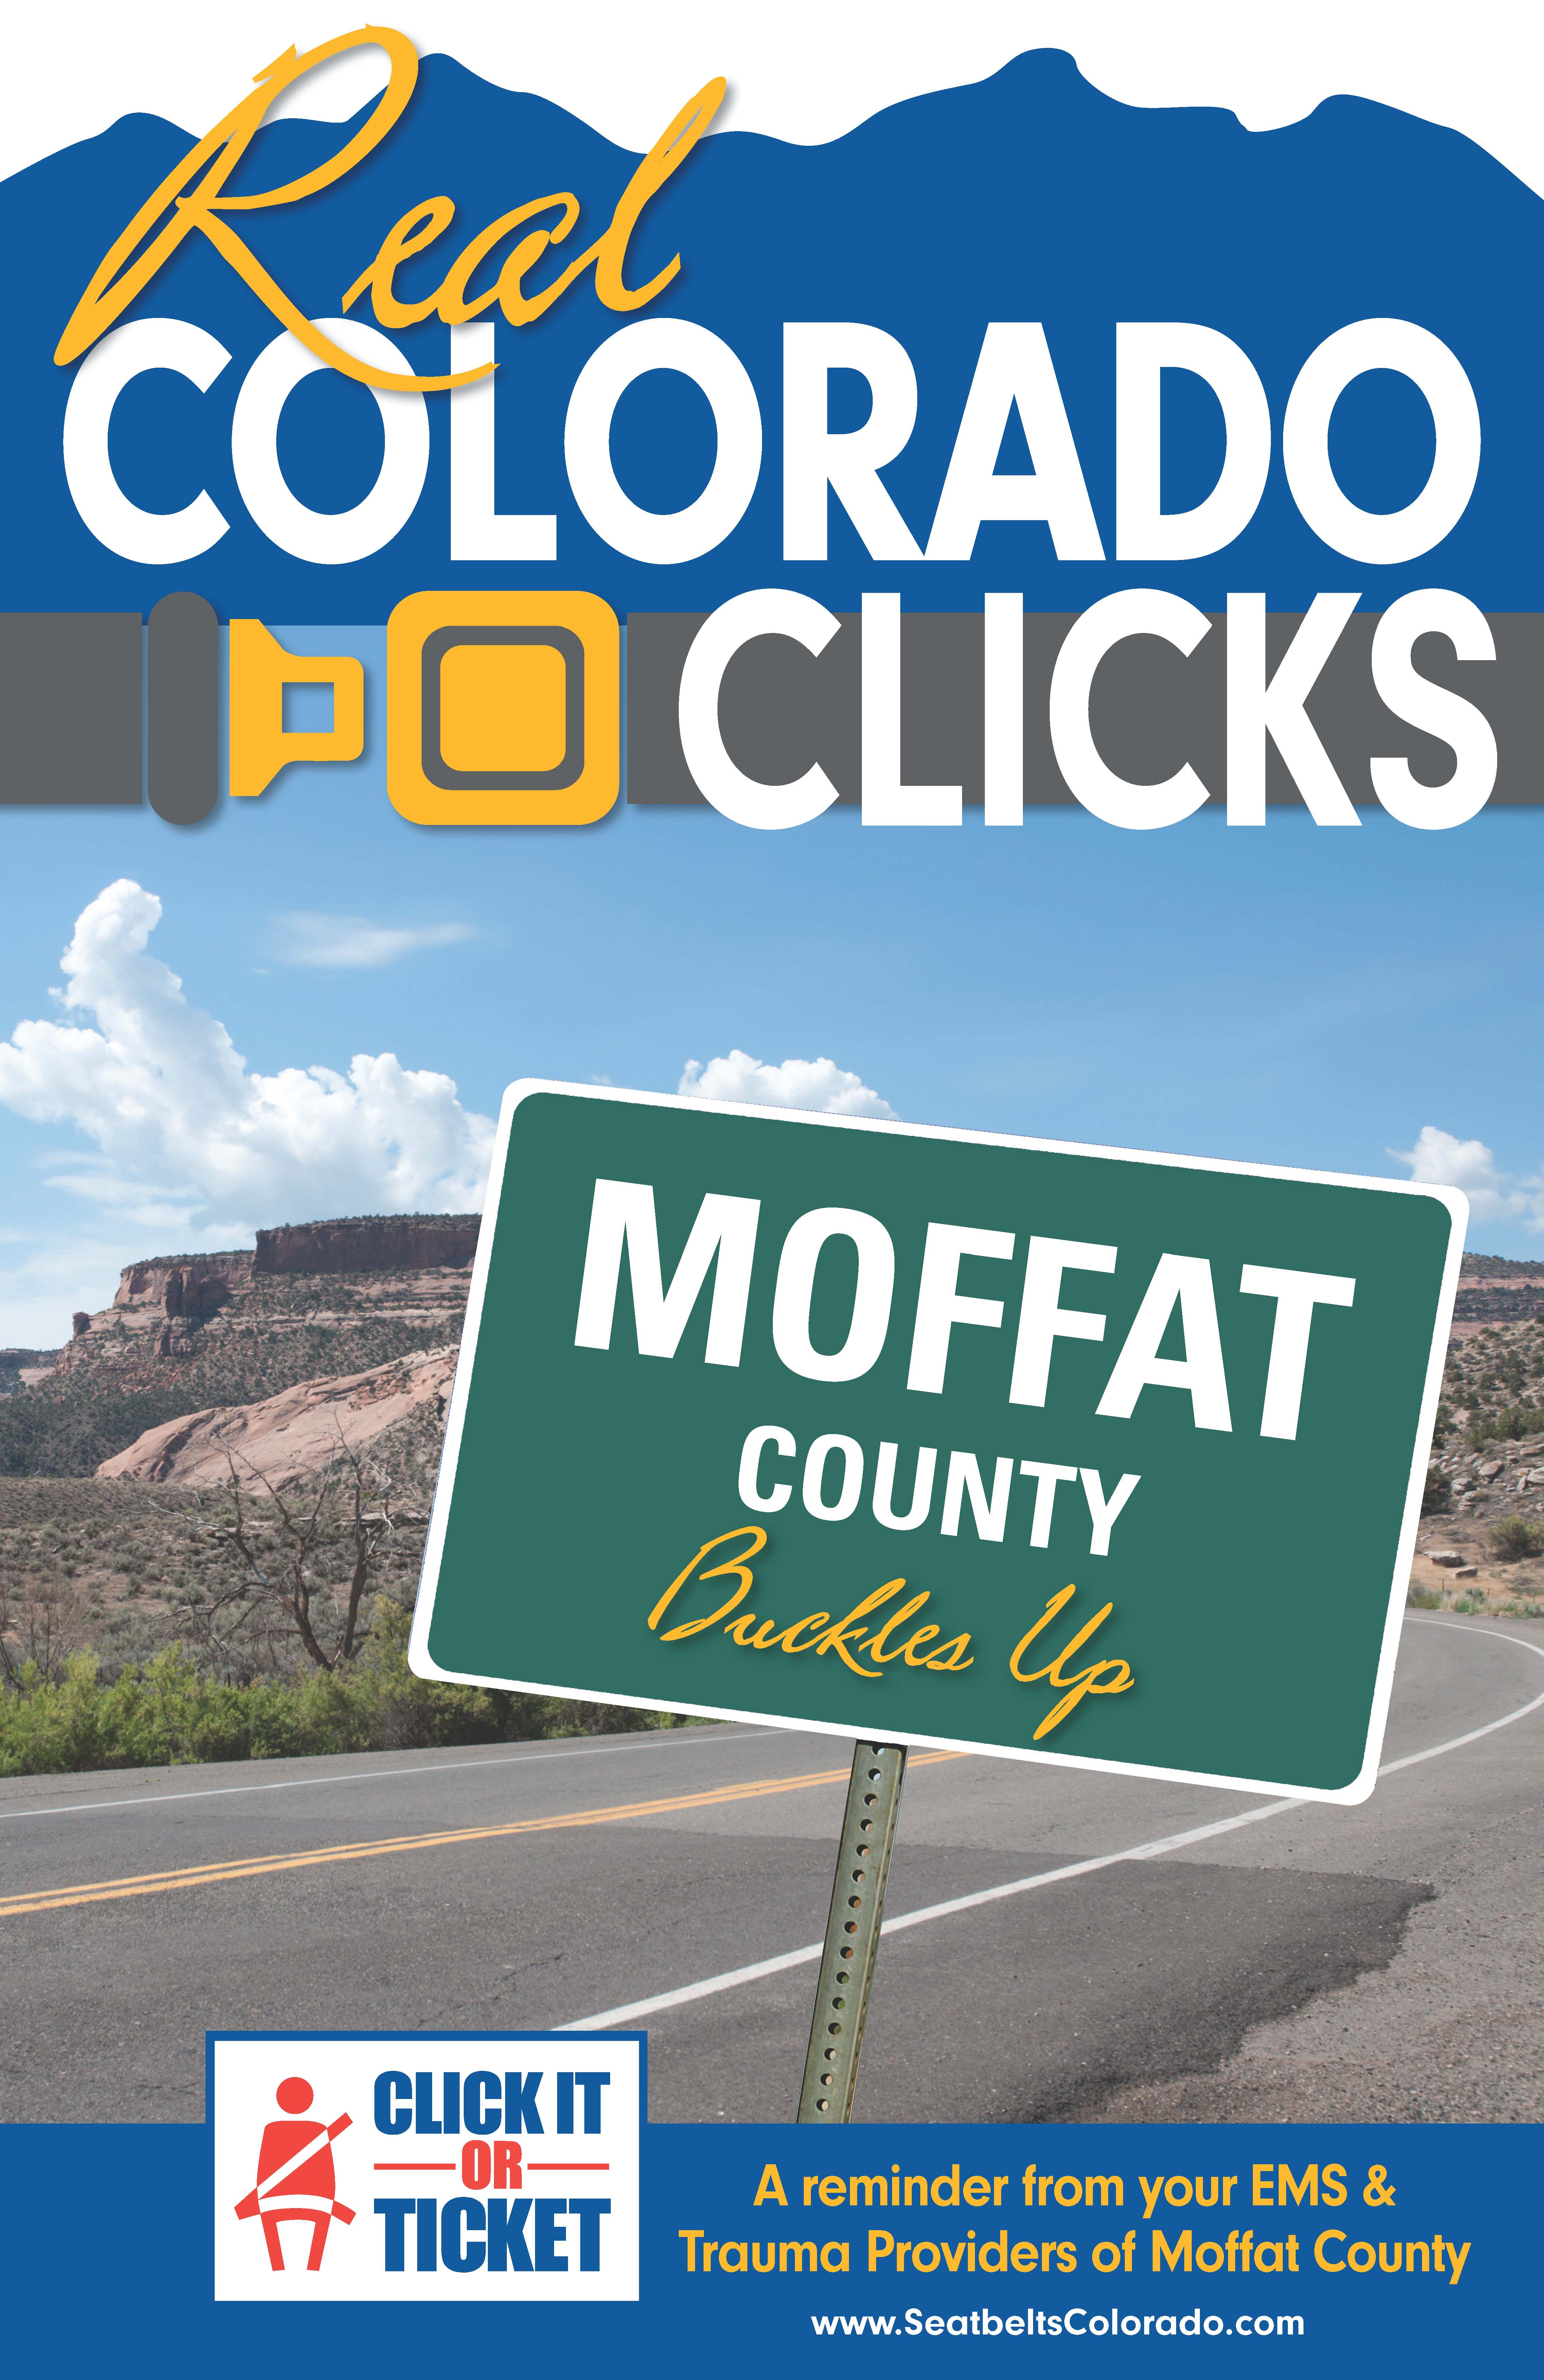 ColoradoClicks_NW_Colorado_RETAC_final2.jpg detail image